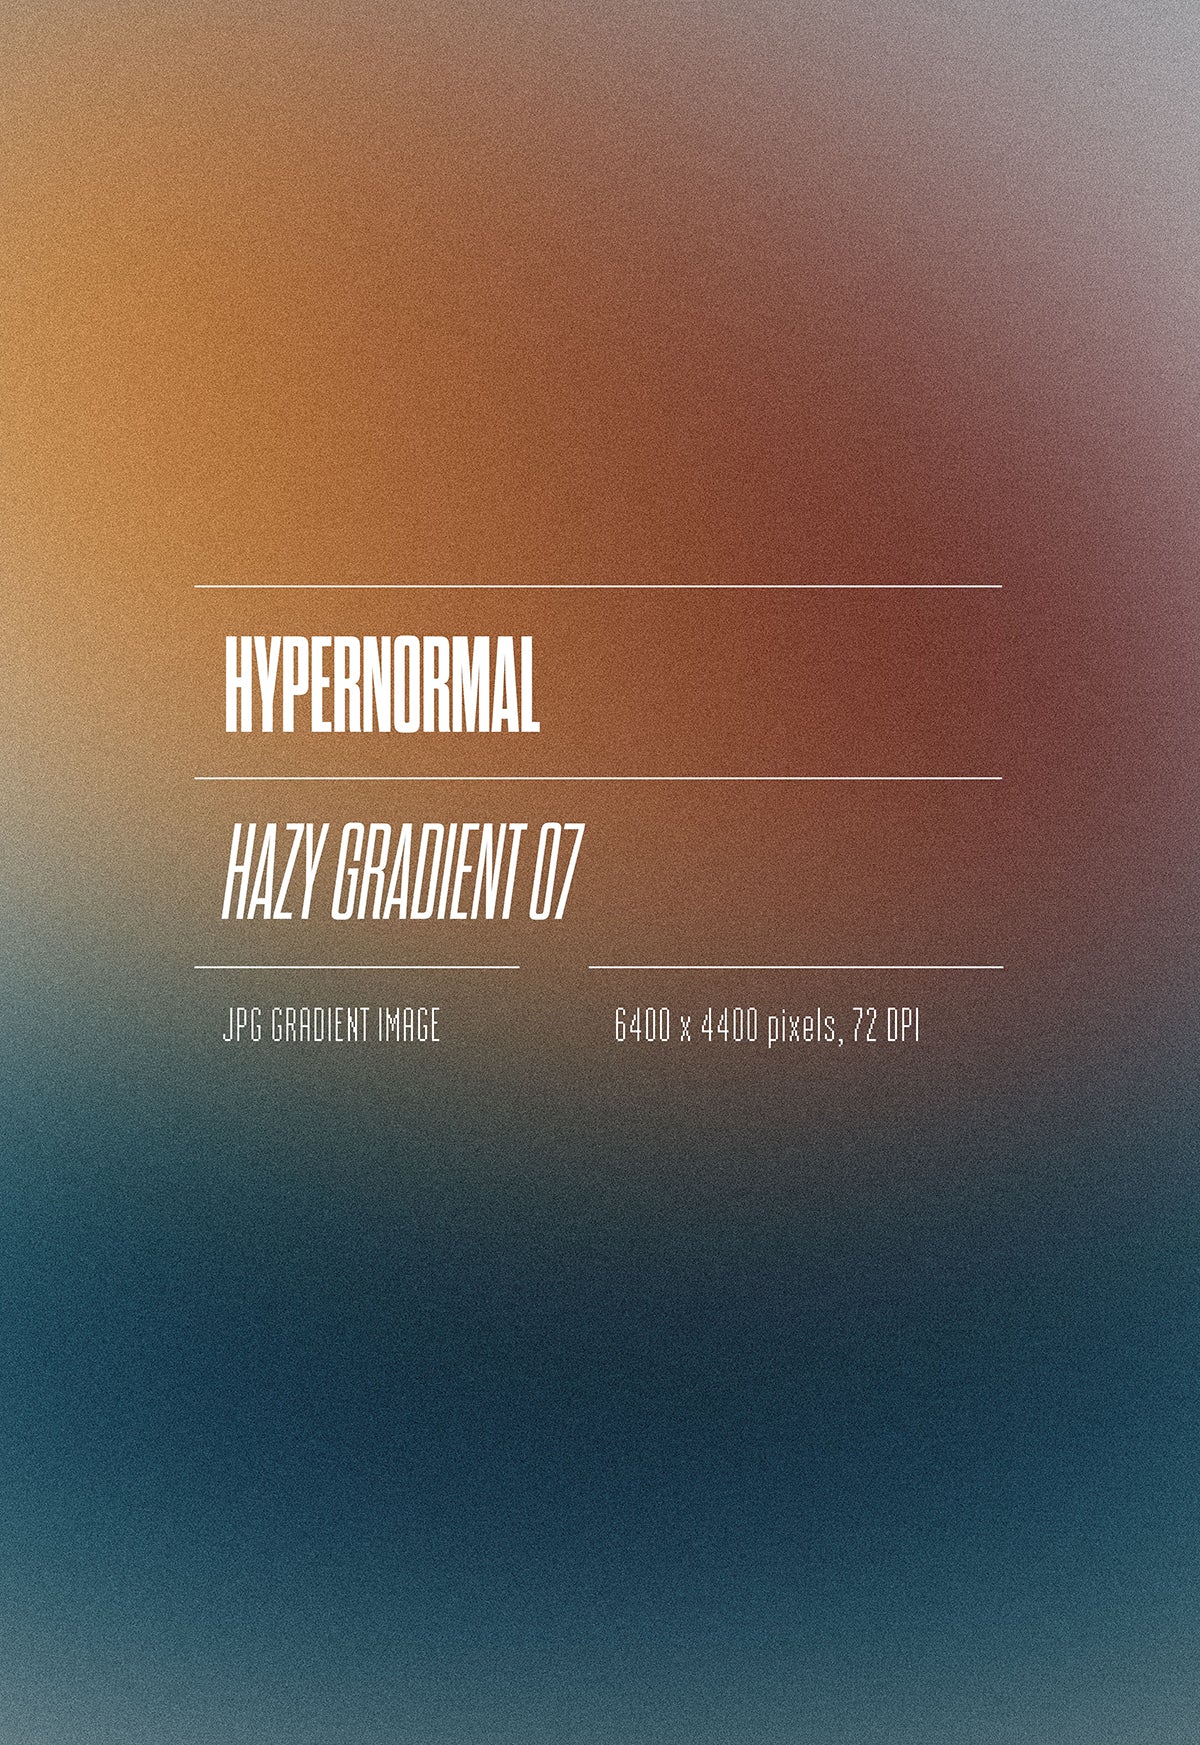 Hypernormal Hazy Gradient Pack 01